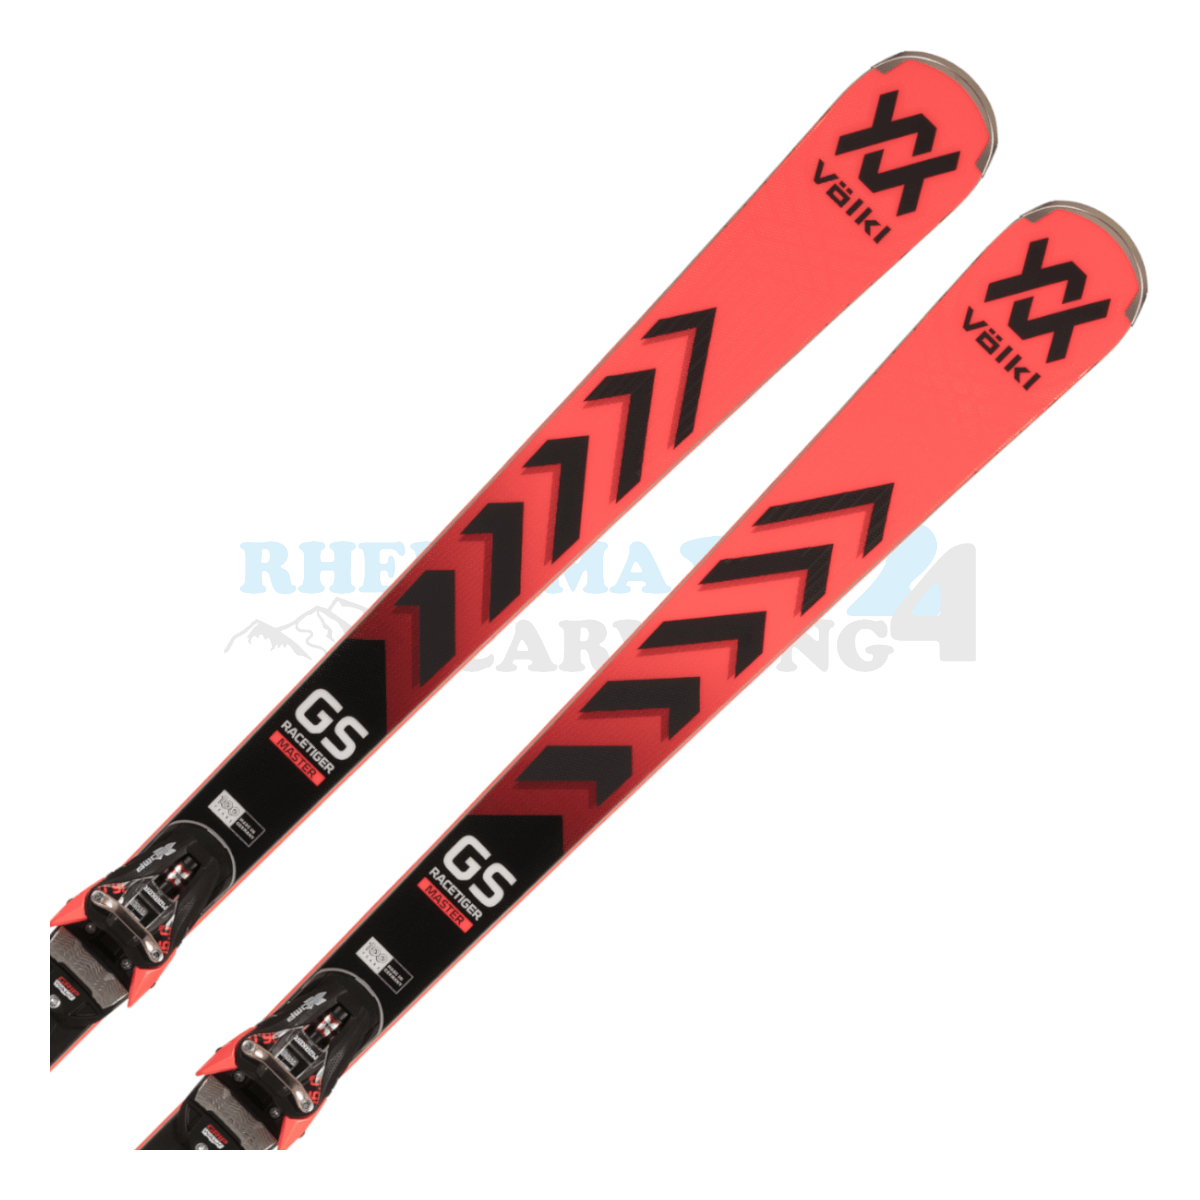 Völkl Racetiger GS Master mit Platte sowie Bindung aus dem Jahre 2024, der Ski ist in der Farbe rot-schwarz, die Ansicht des oberen Teils des Skis